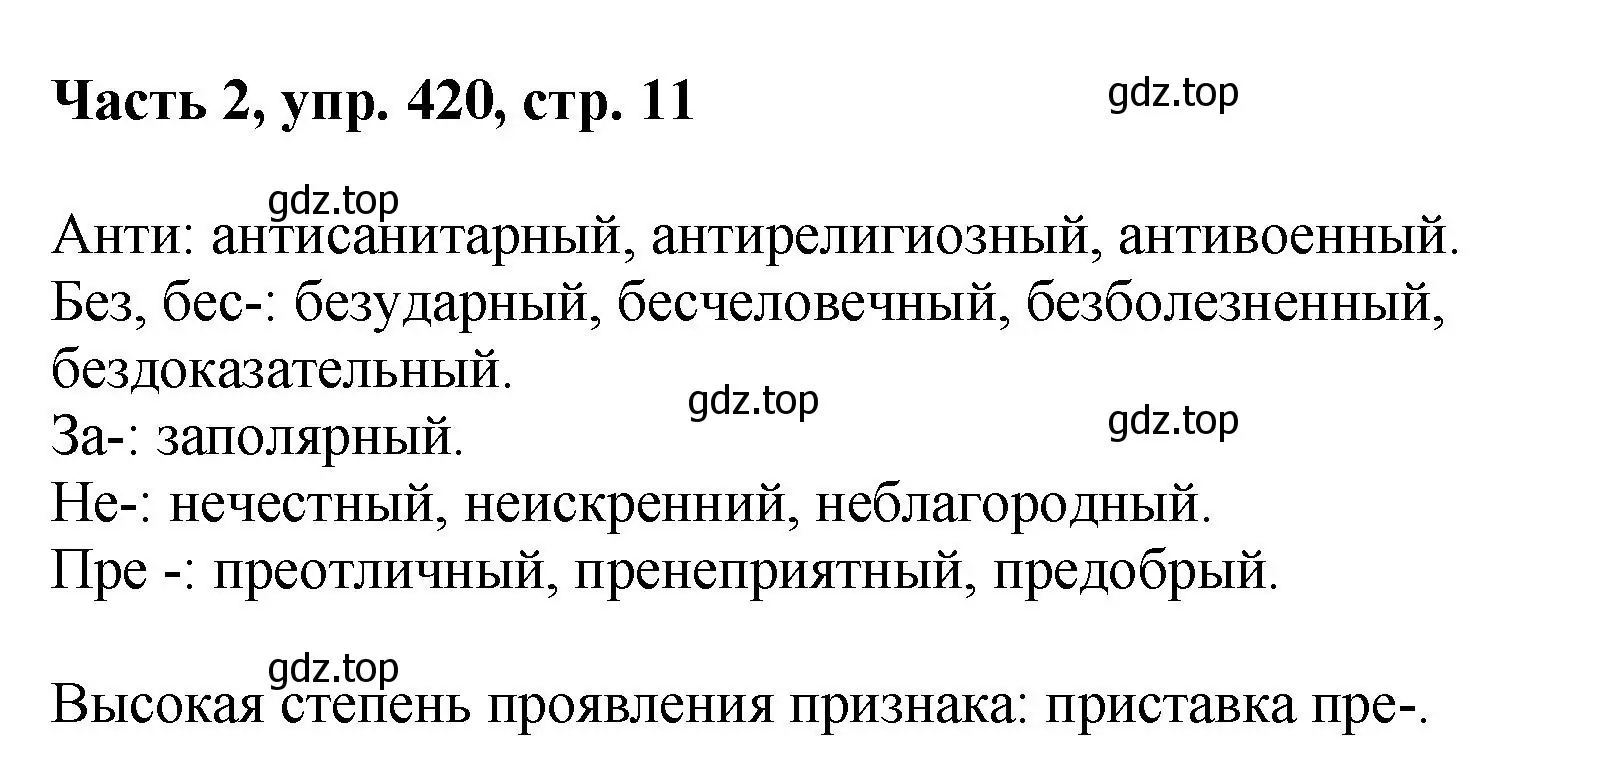 Решение номер 420 (страница 11) гдз по русскому языку 6 класс Баранов, Ладыженская, учебник 2 часть